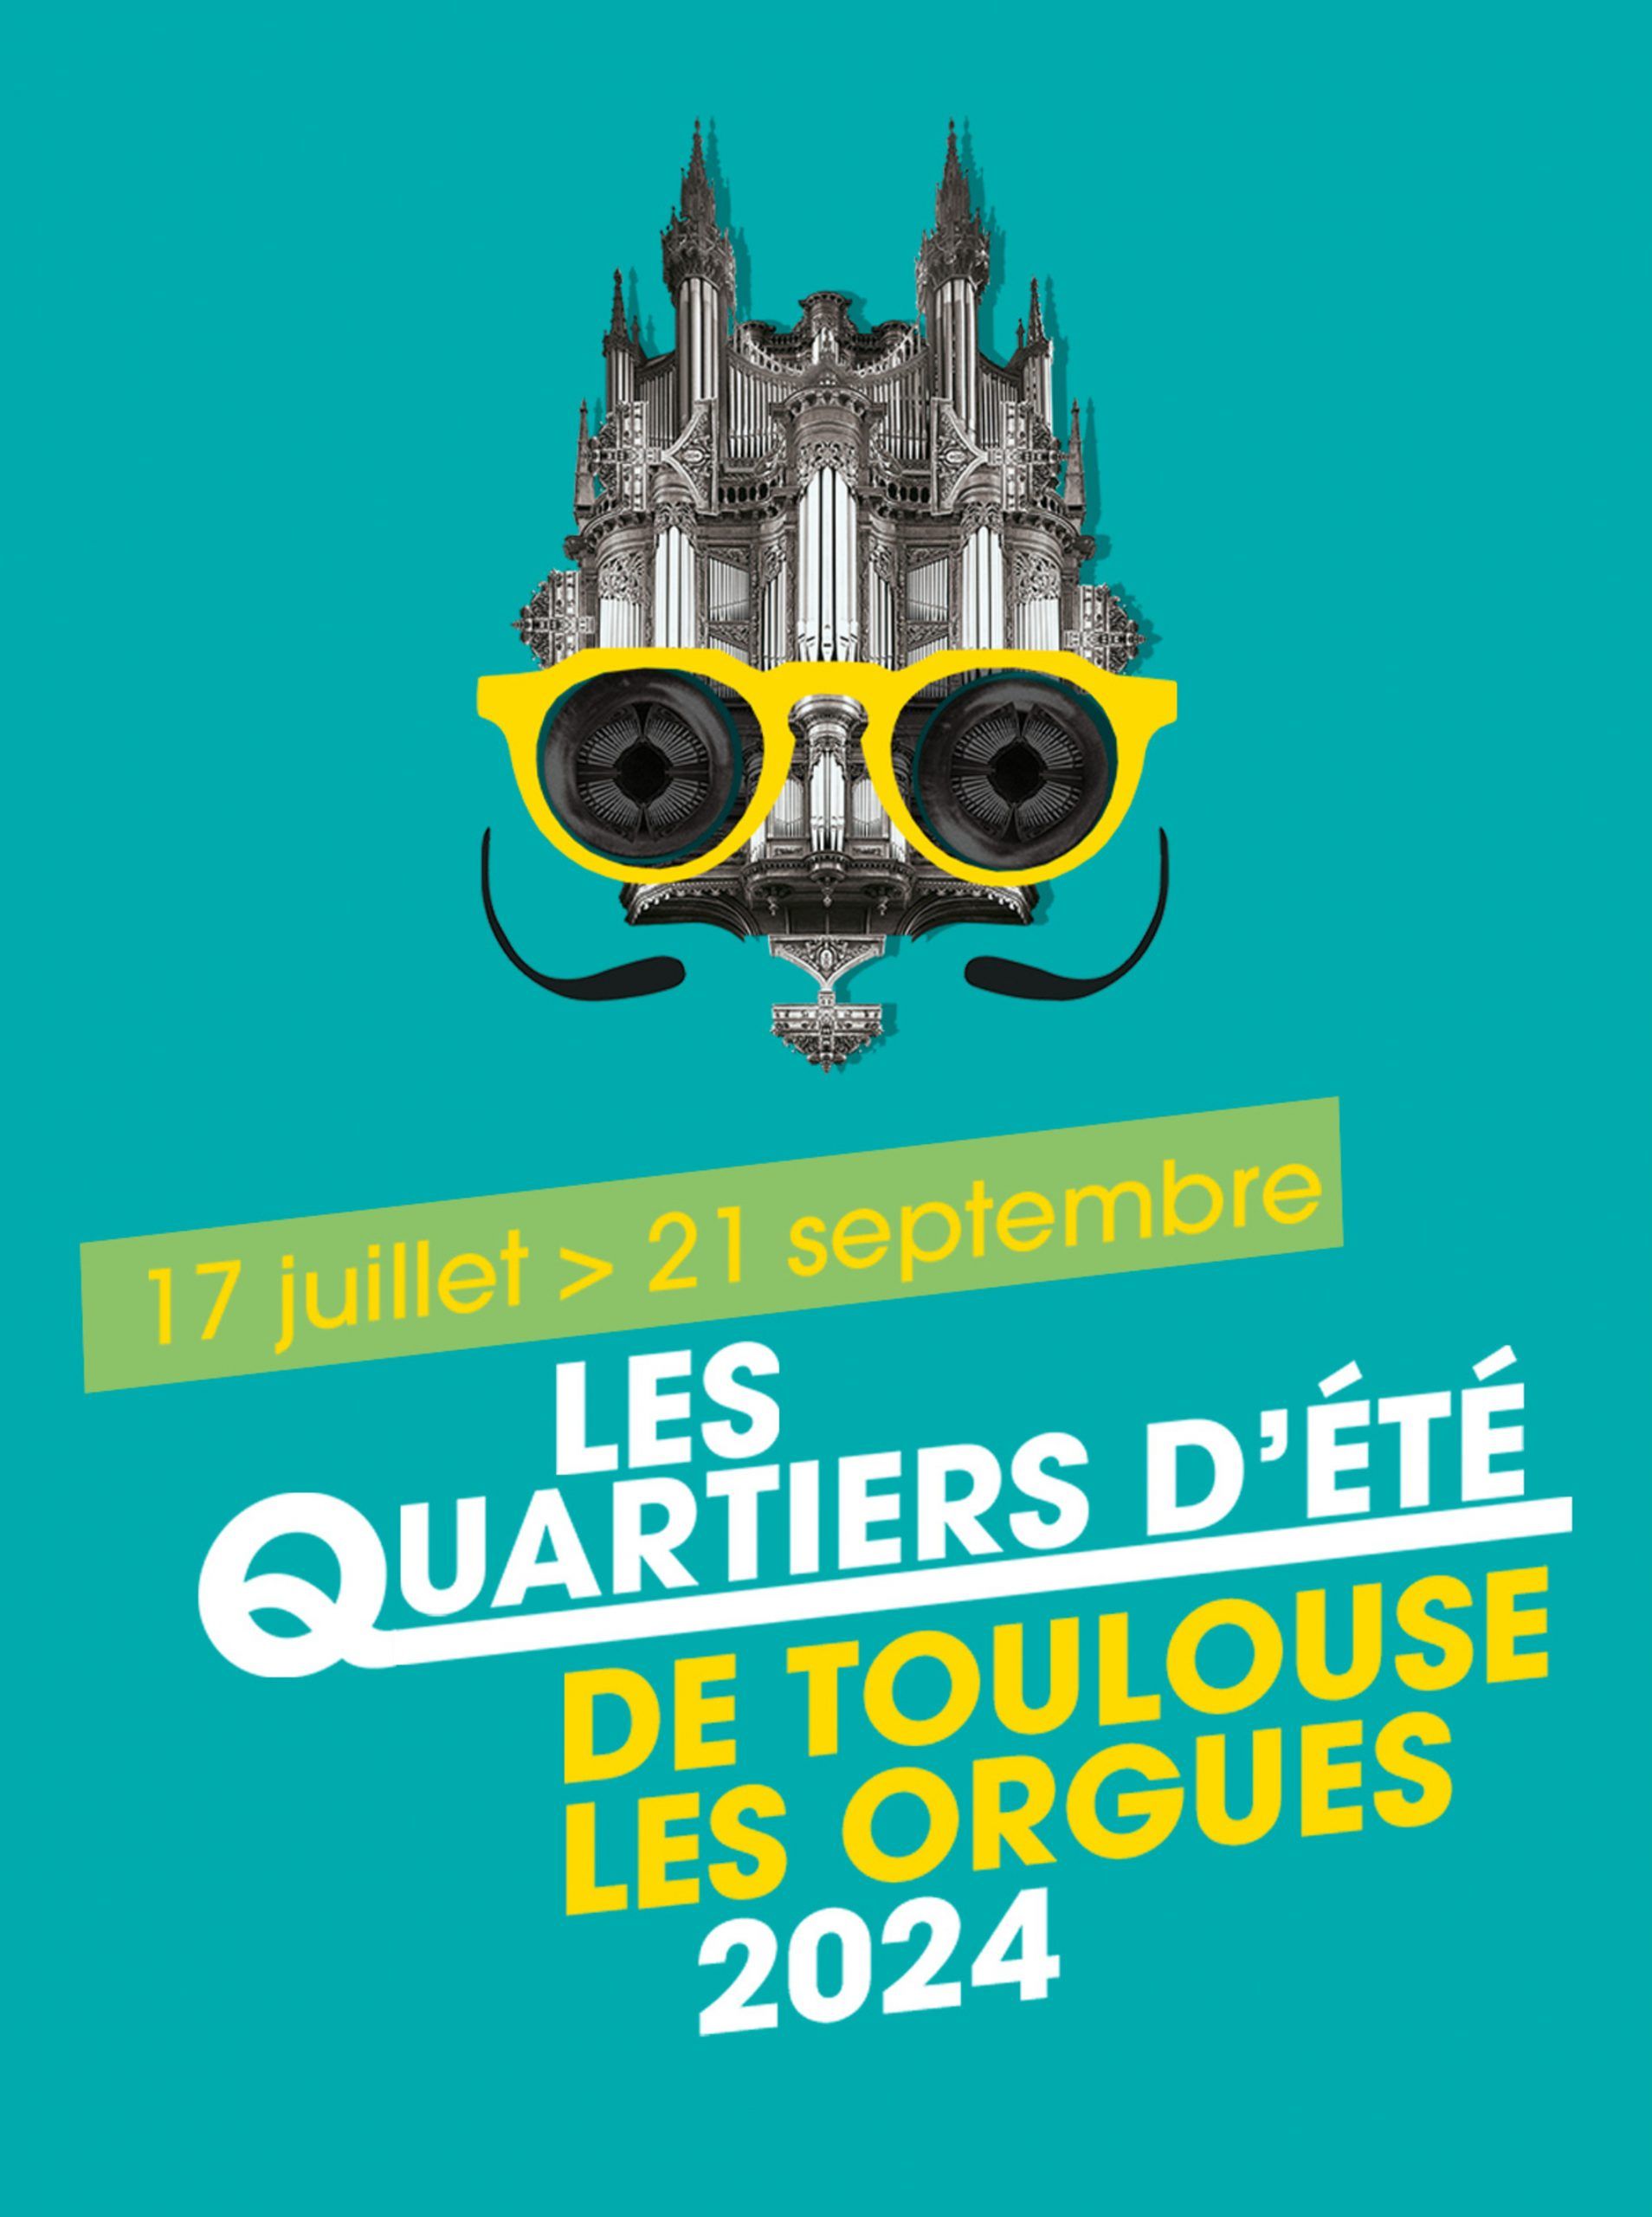 Toulouse les Orgues - Les Quartiers d'été